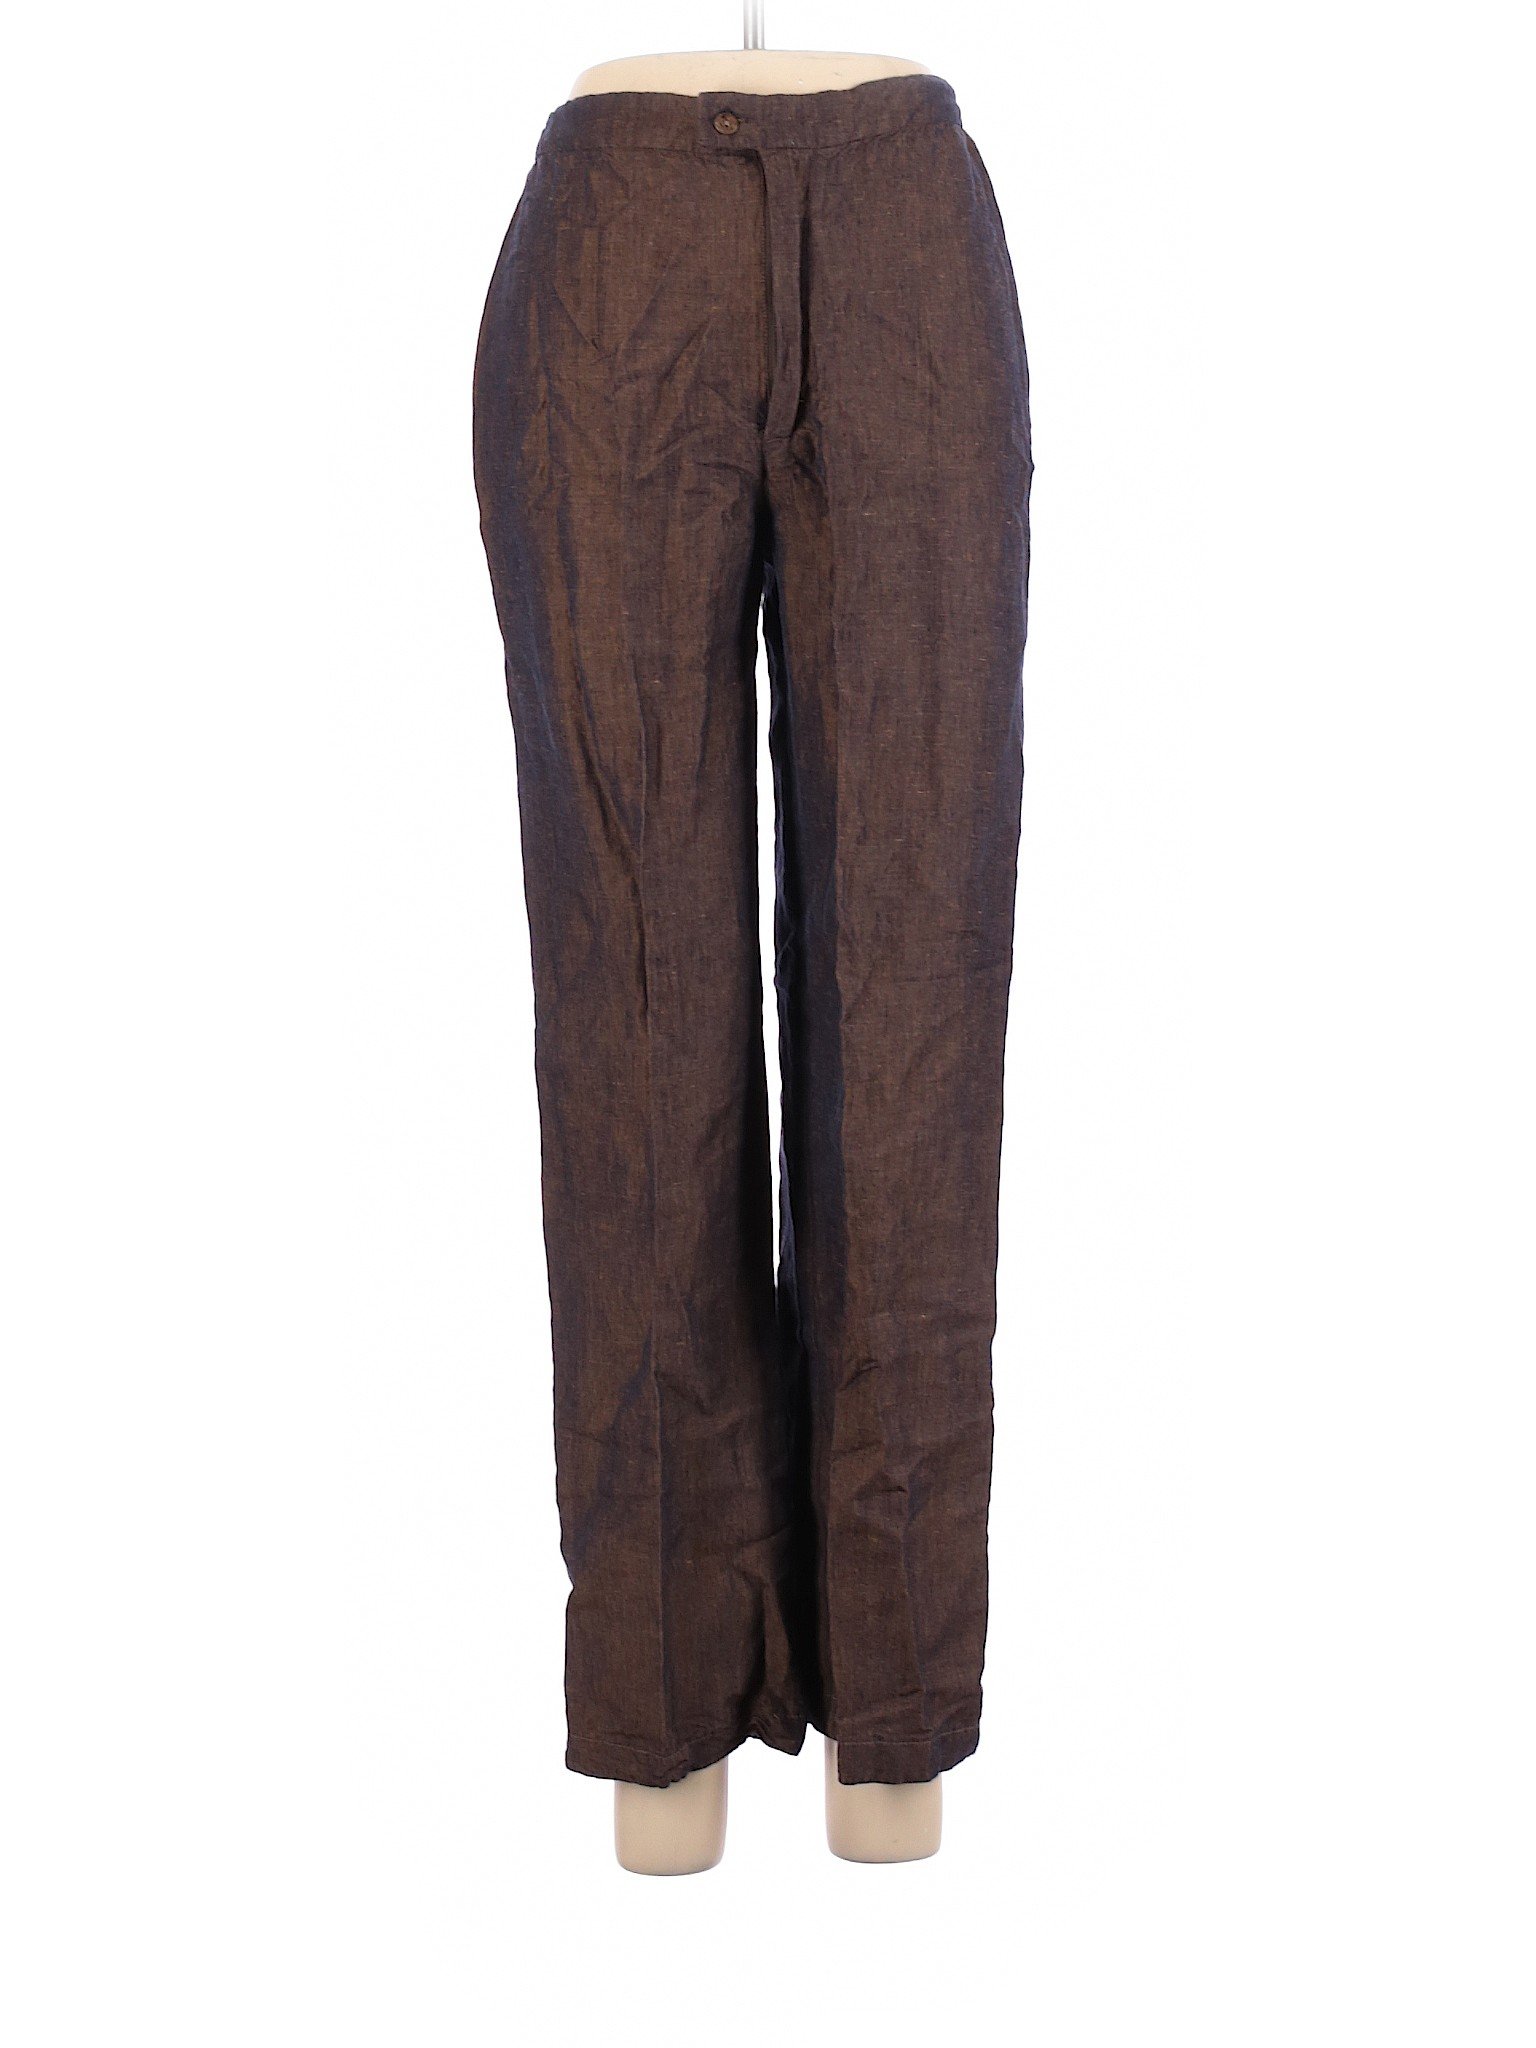 Chico's Design Women Brown Linen Pants S | eBay